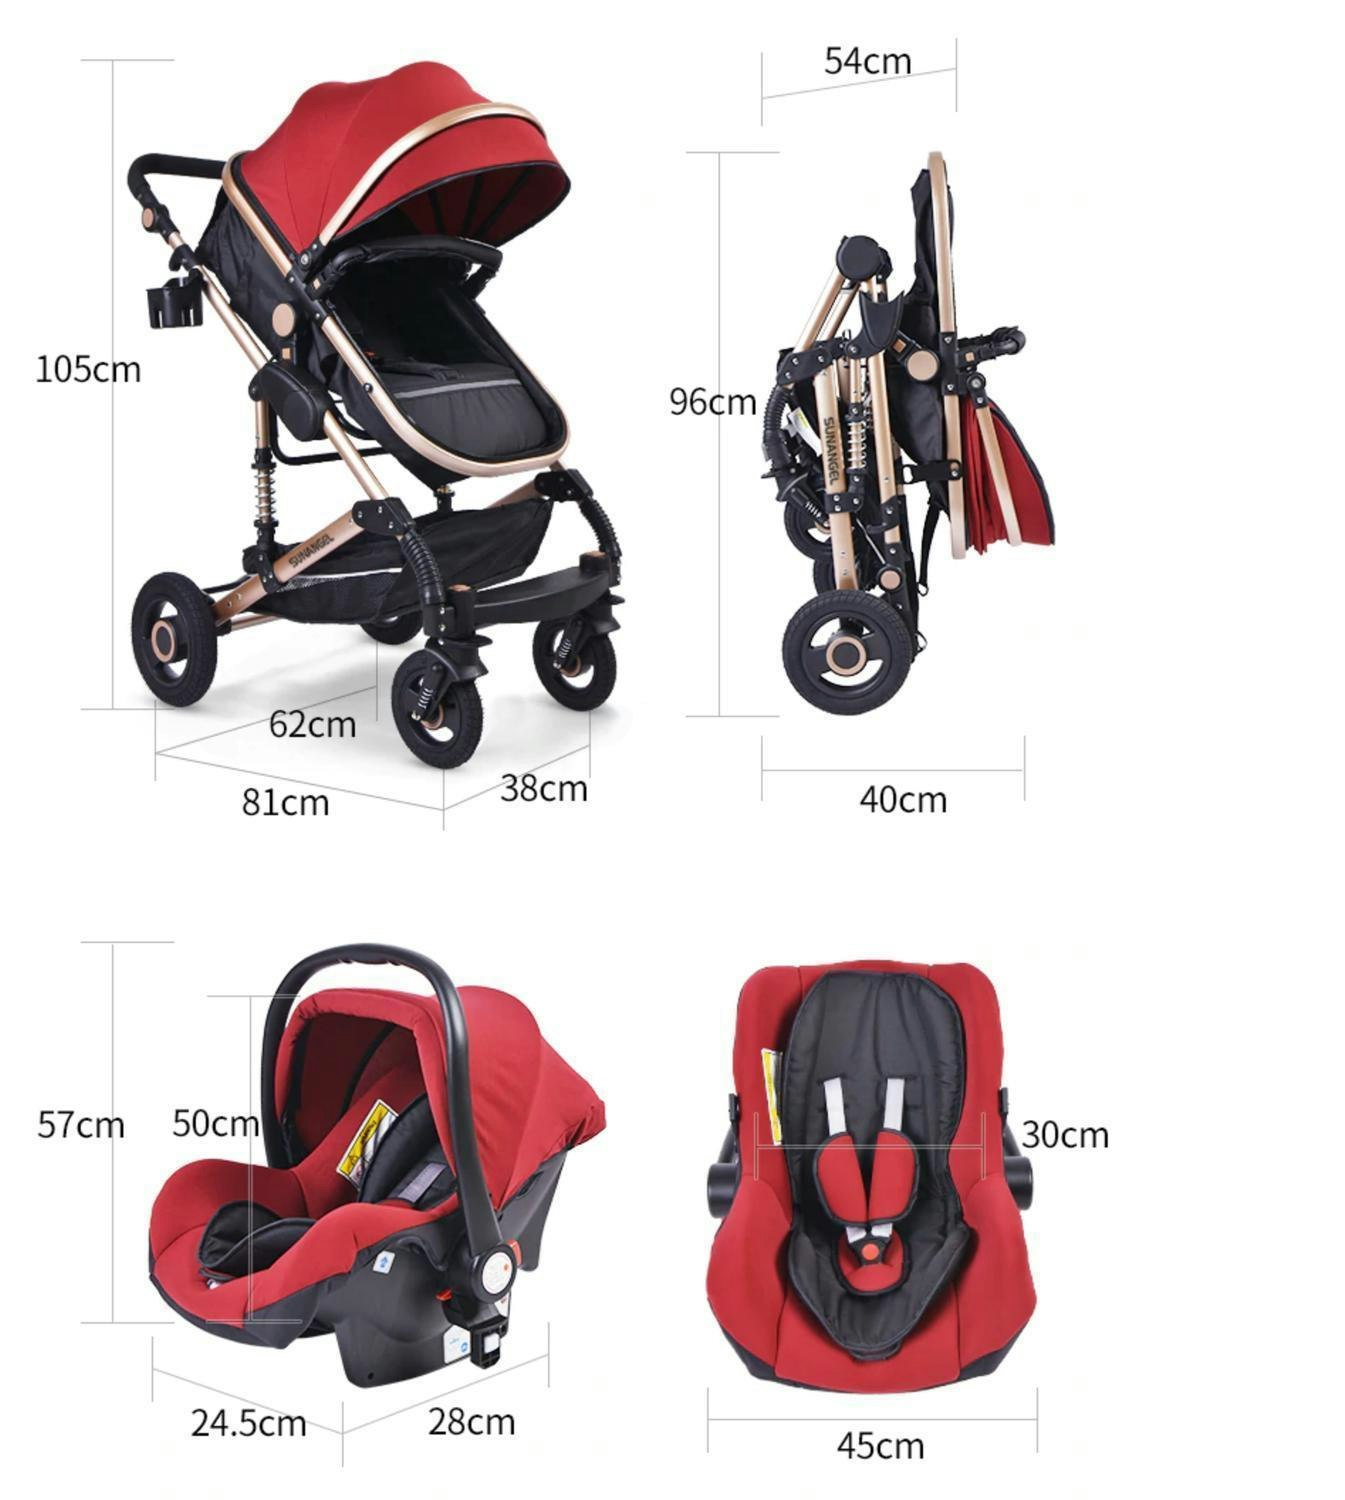 3 i 1 kombinations barnvagn med tillbehör, rosa. - Sumodeal